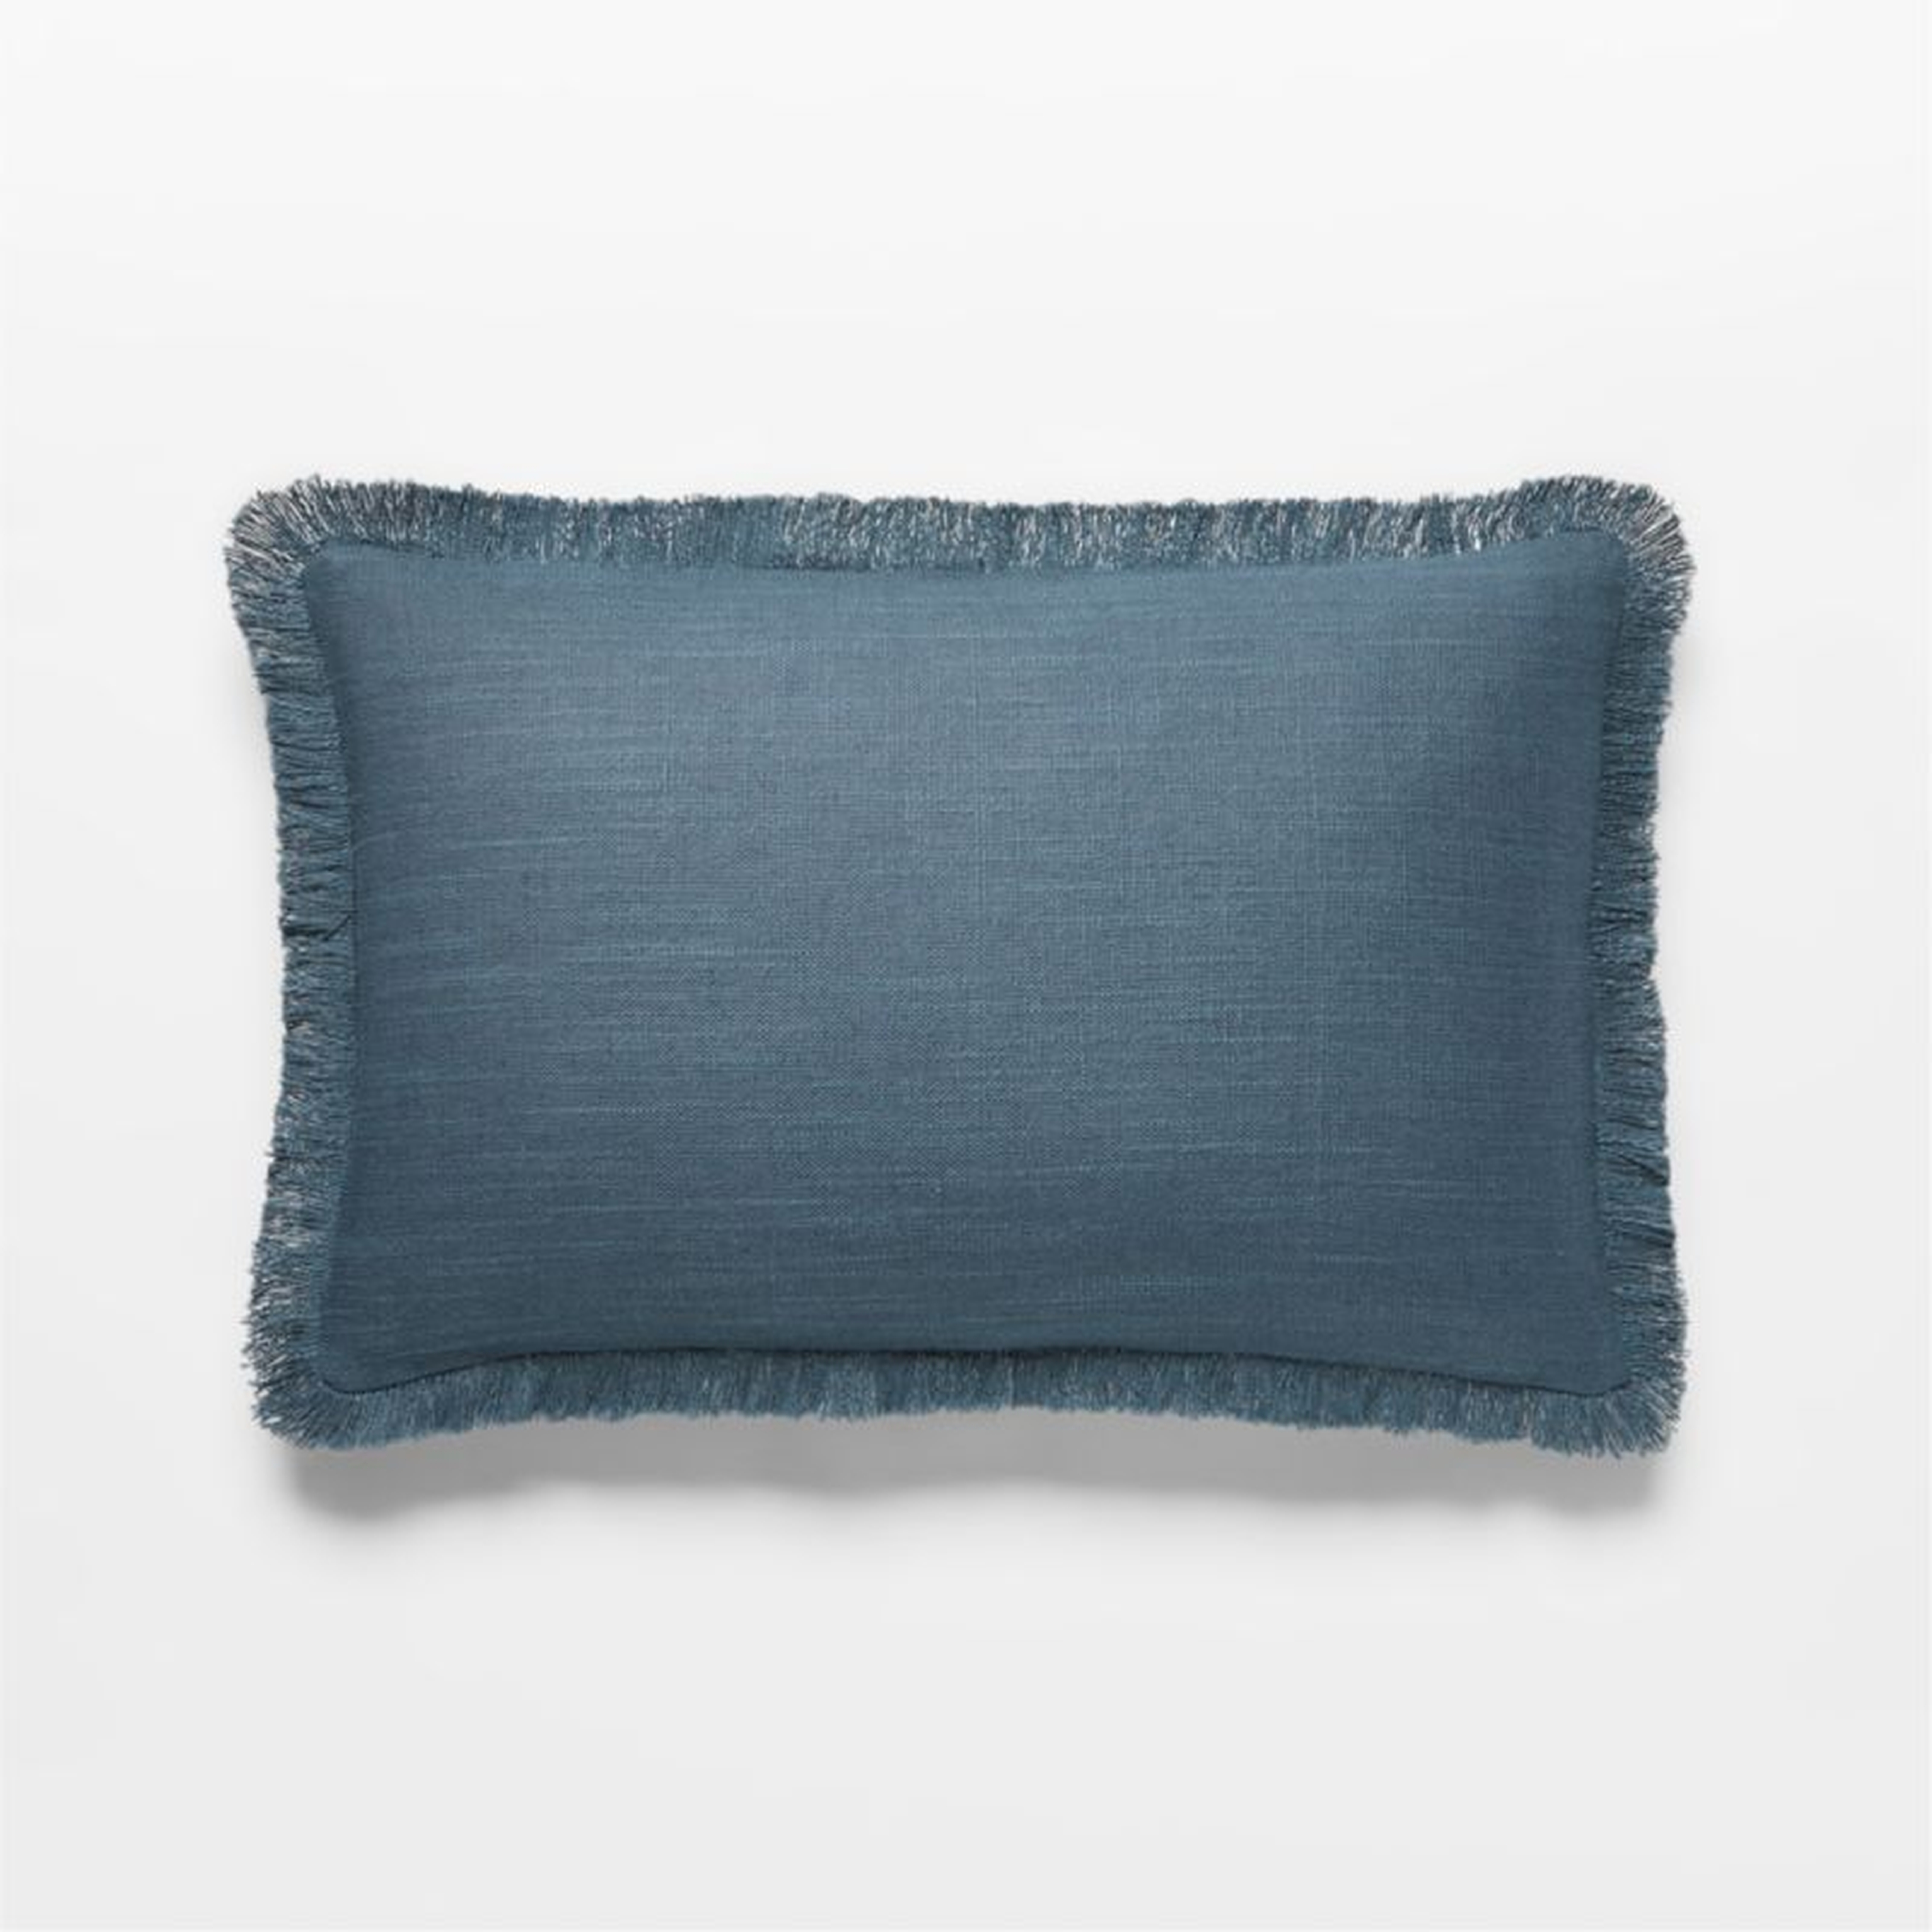 Eyelash Lumbar Pillow, Blue, 18" x 12" - CB2